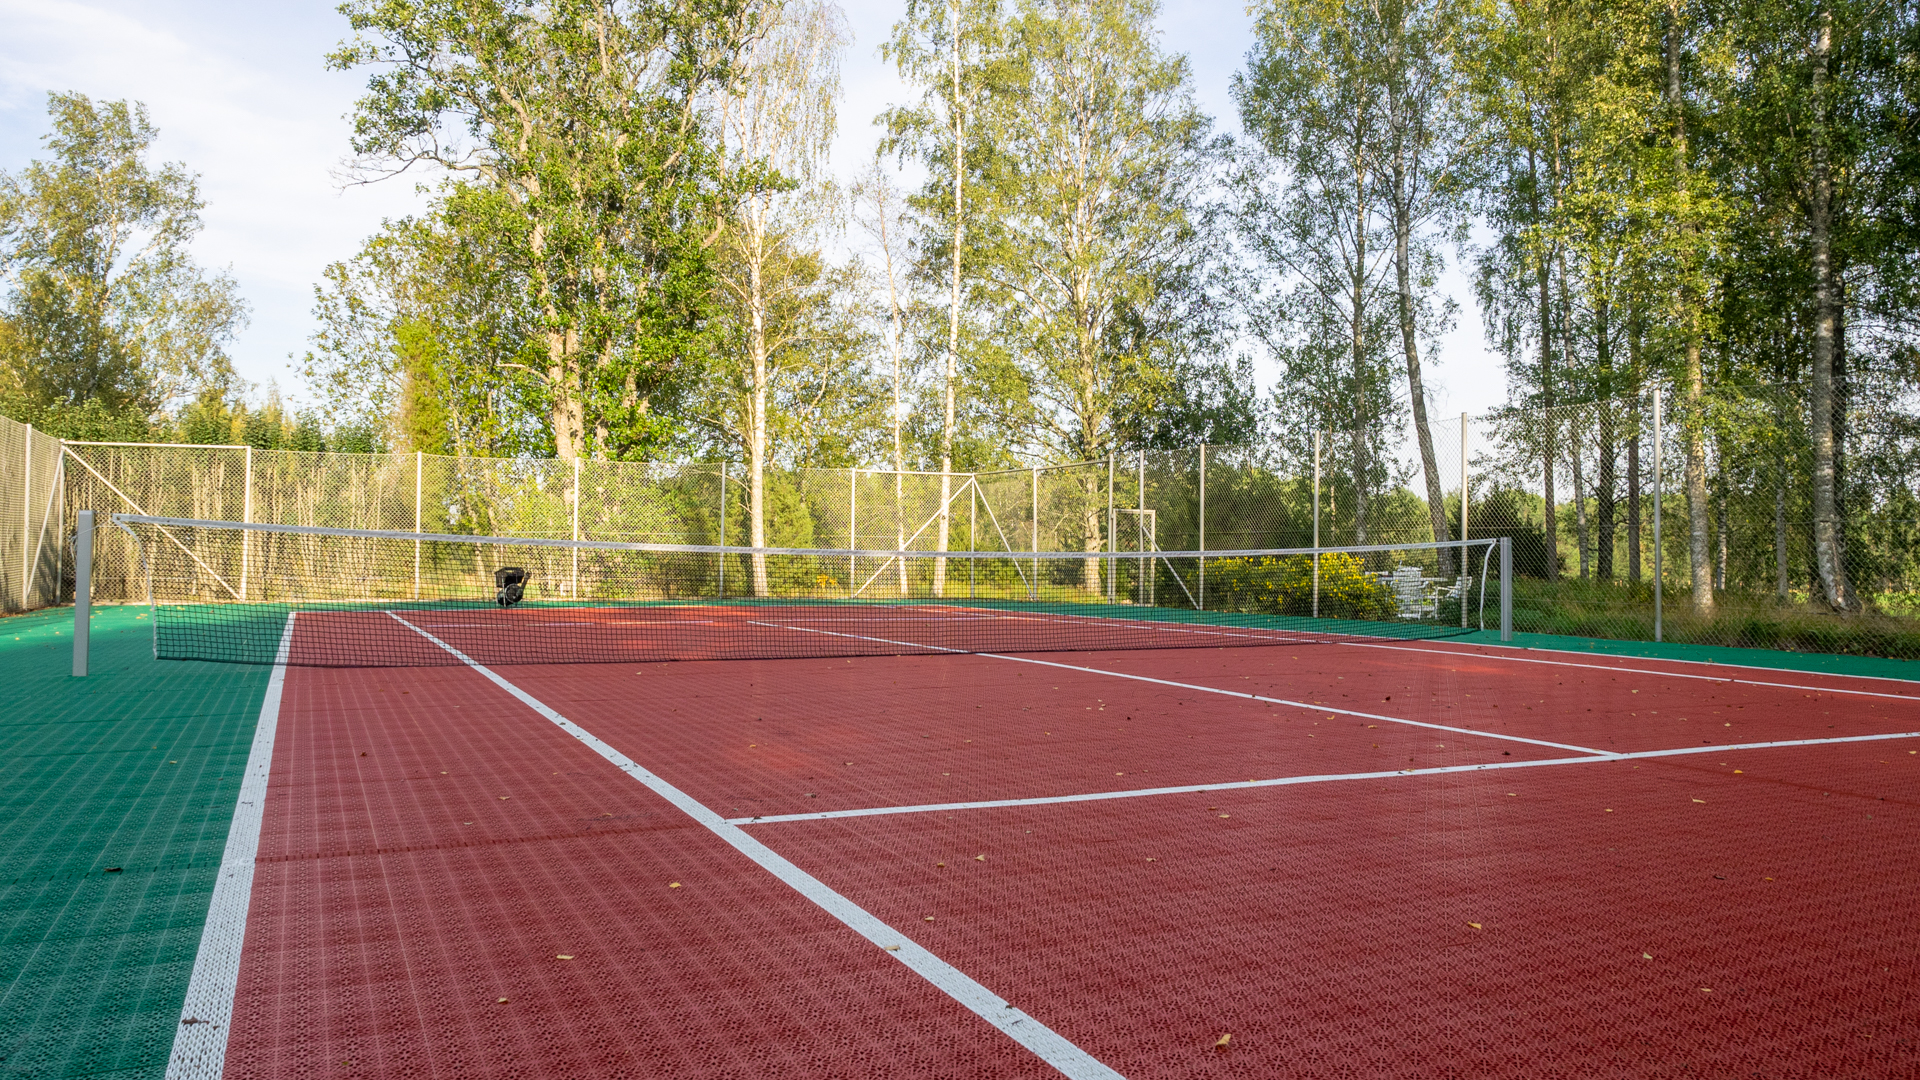 Tenniskenttä. Tennis court.